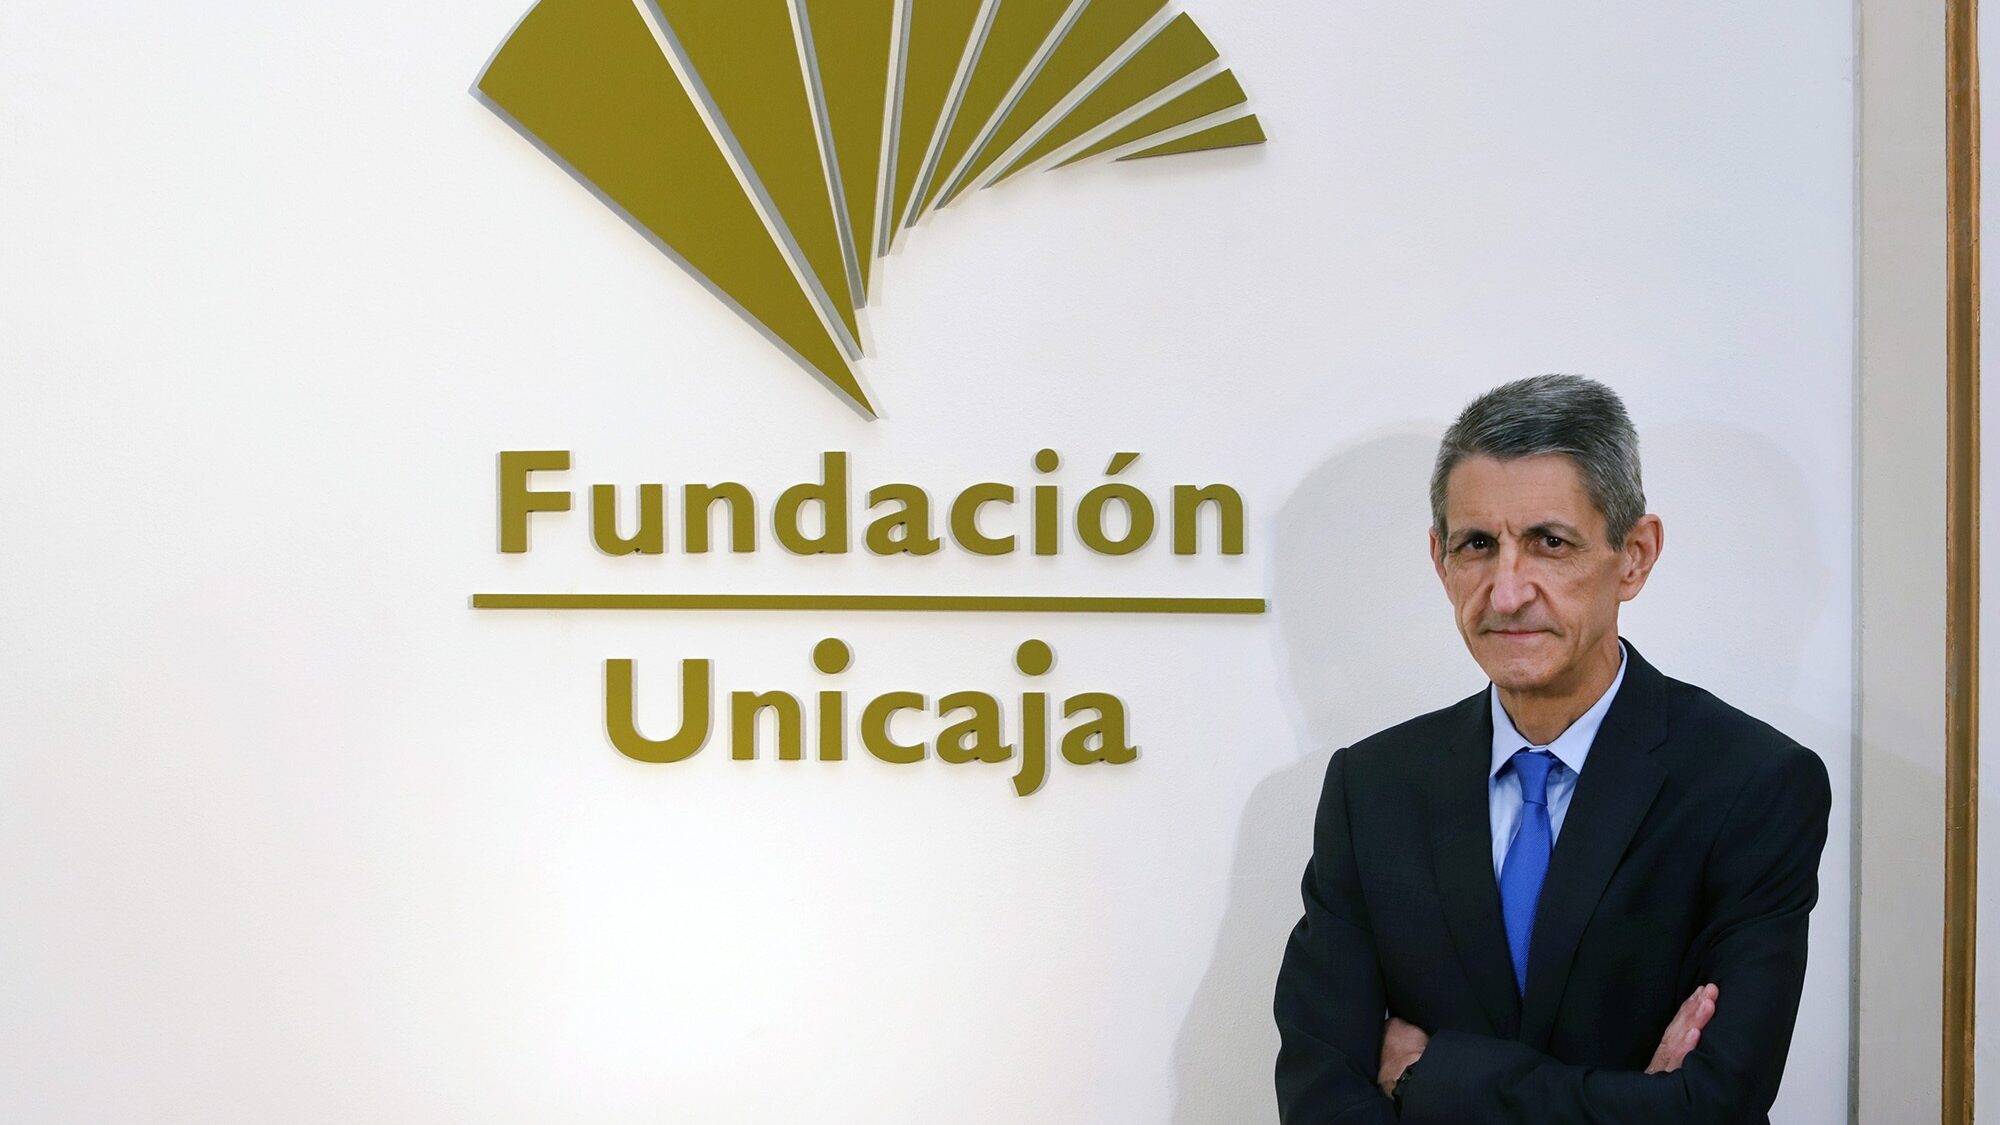 Fundación Unicaja Medel